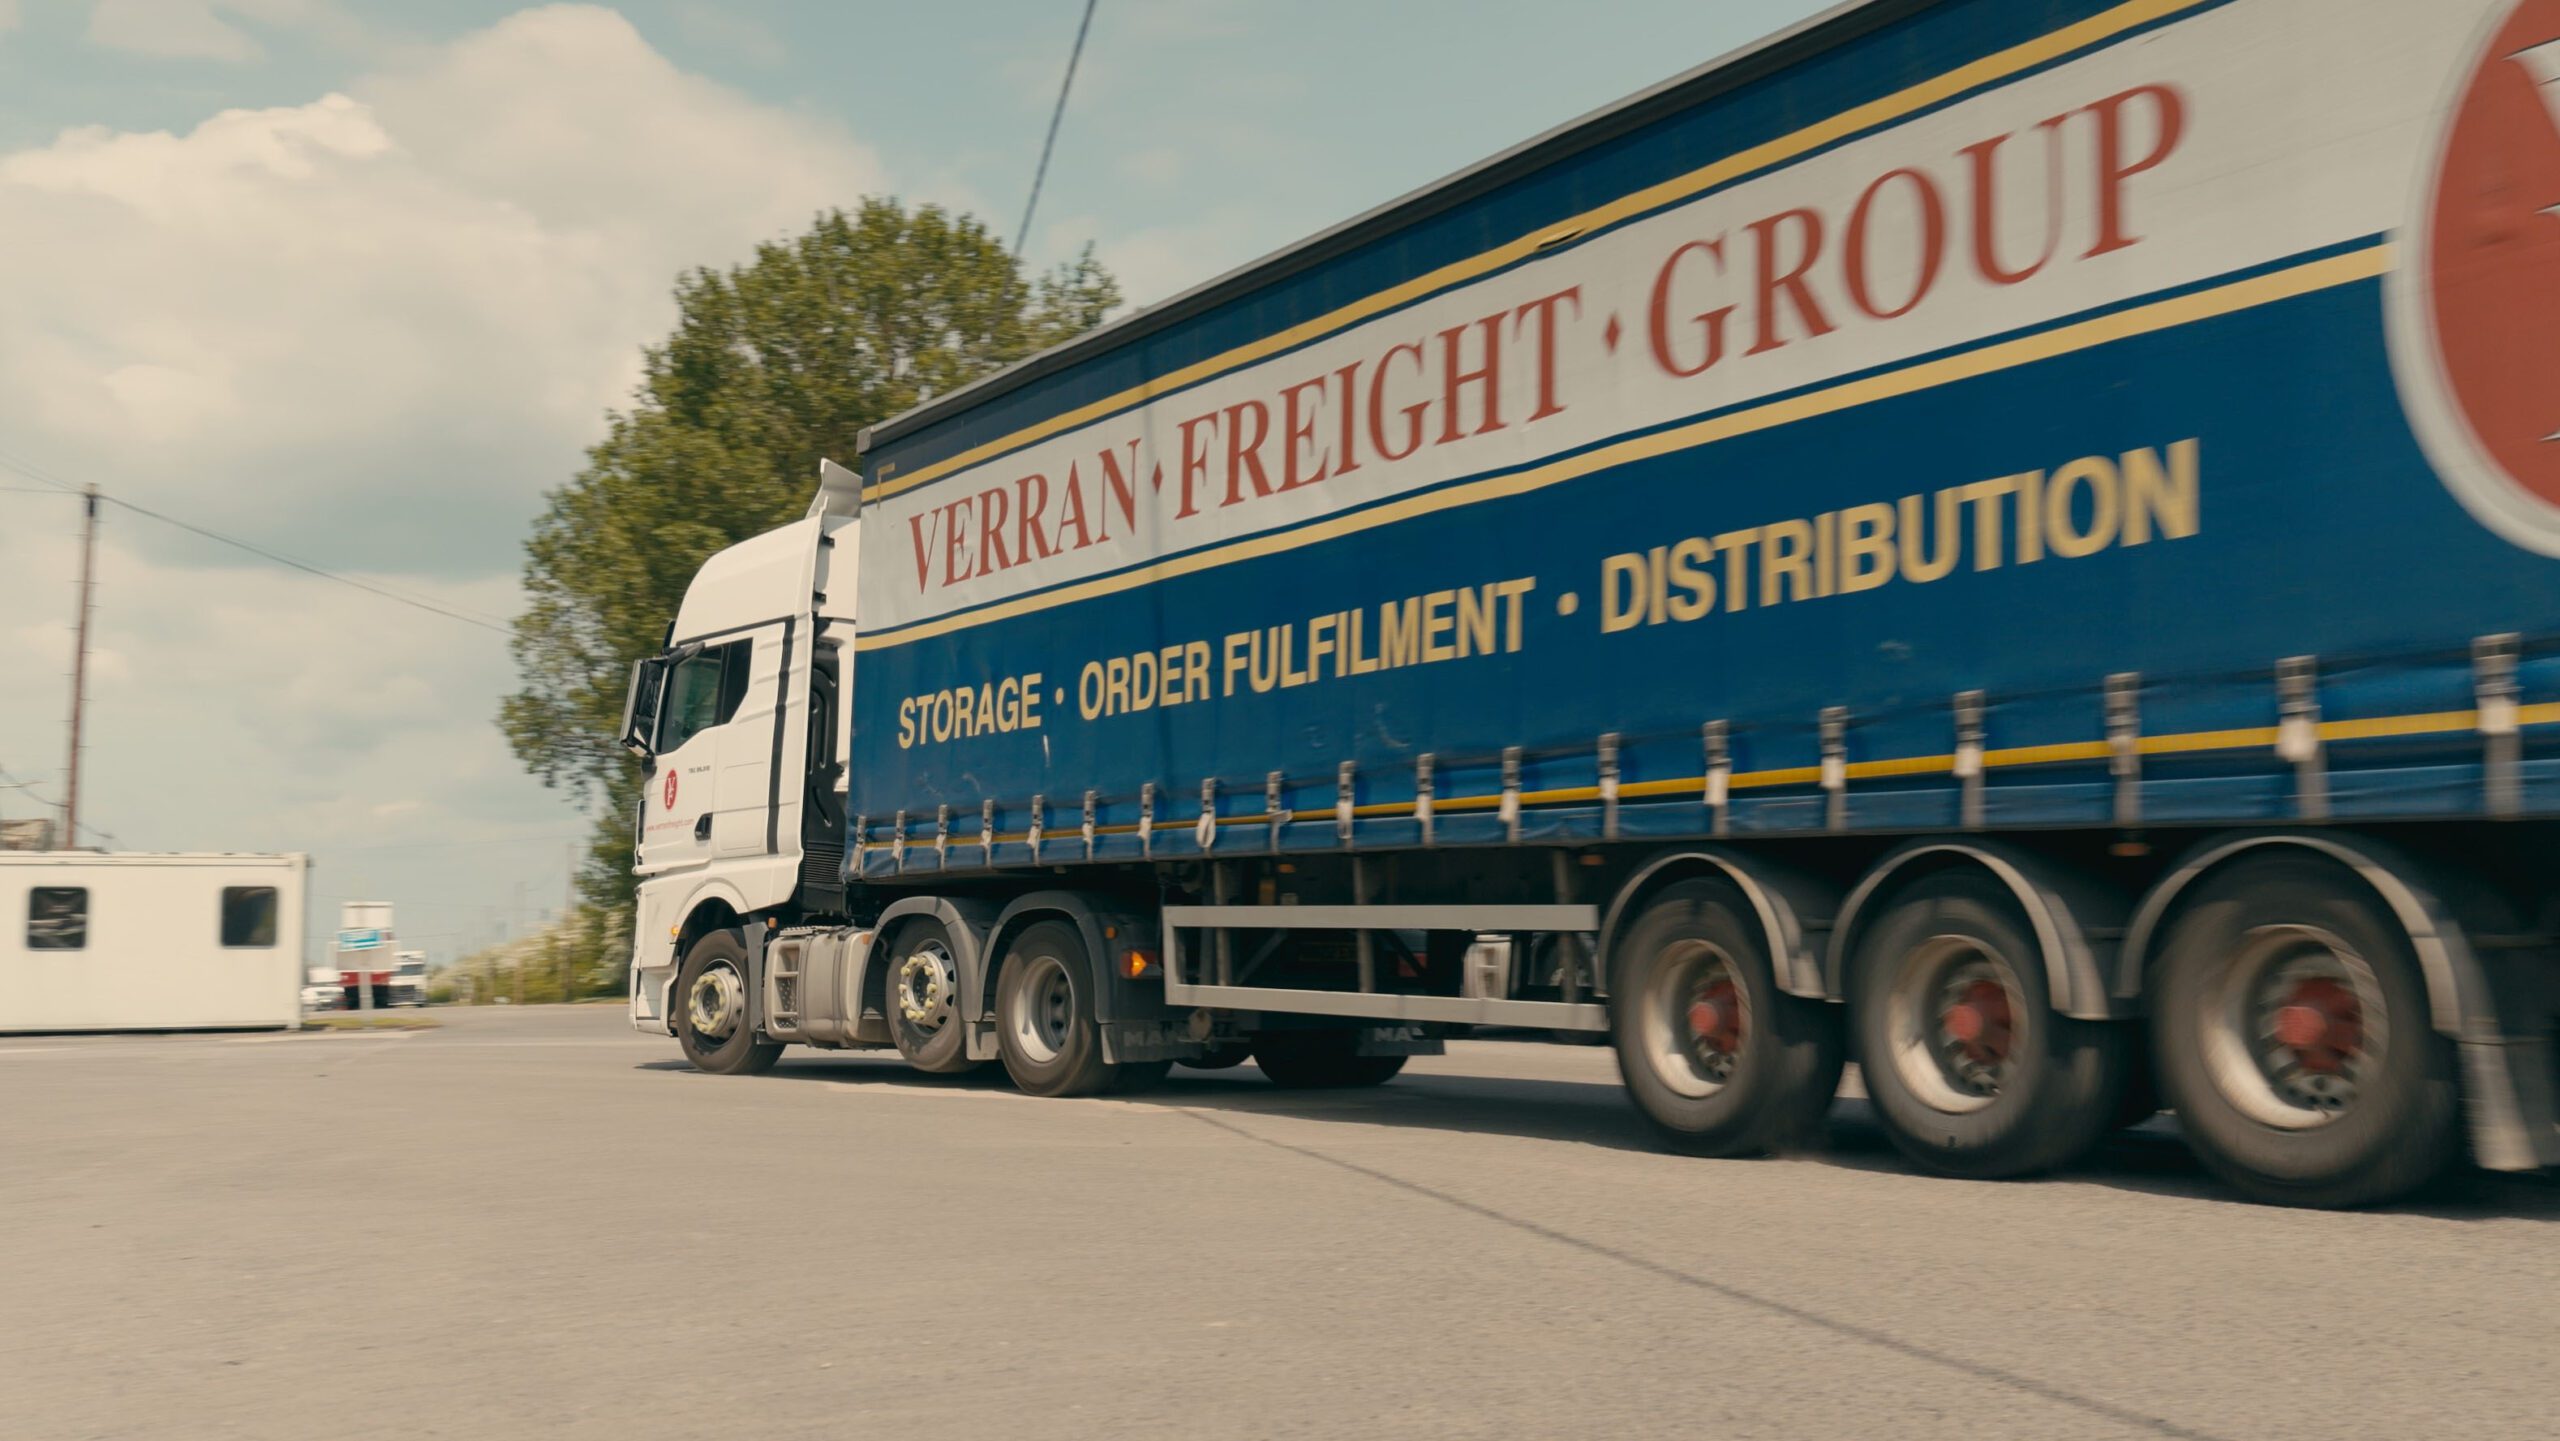 Verran Freight truck driving into depot